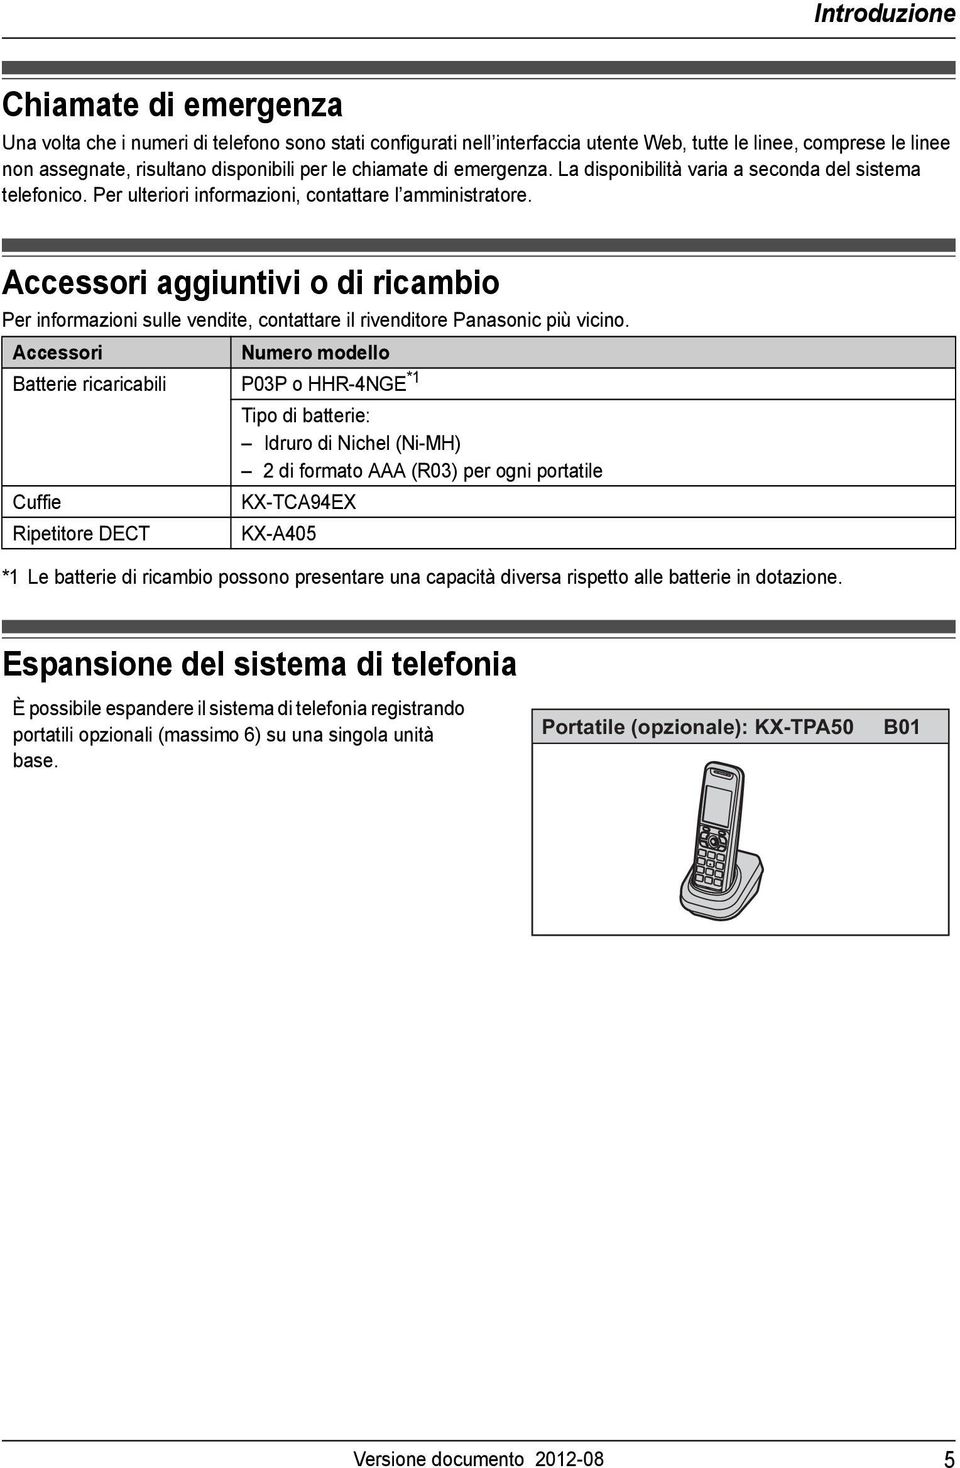 Accessori aggiuntivi o di ricambio Per informazioni sulle vendite, contattare il rivenditore Panasonic più vicino.